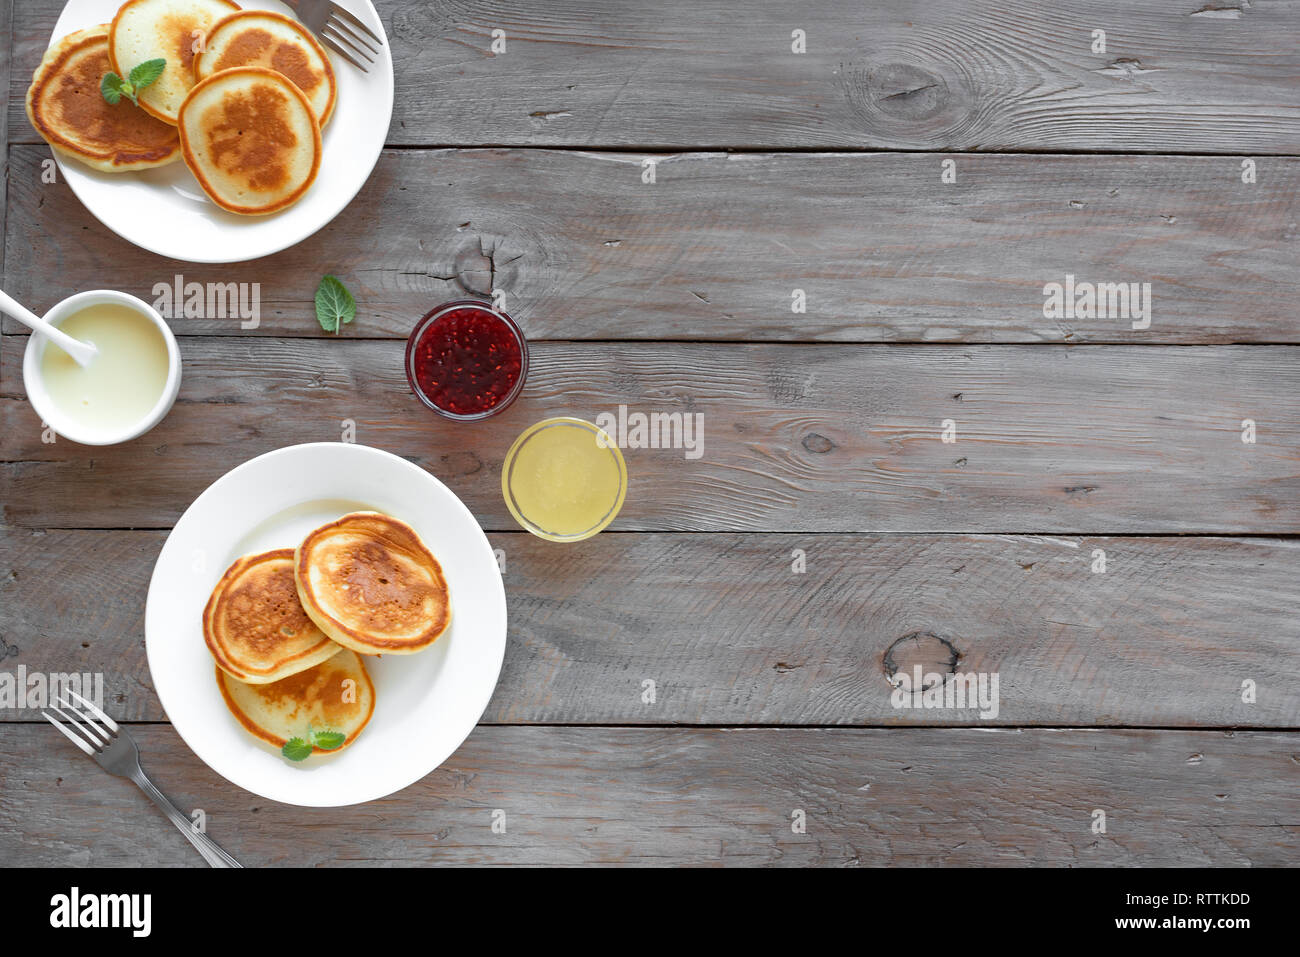 Pfannkuchen zum Frühstück. Hausgemachte Pfannkuchen mit verschiedenen Toppings, Marmelade, Honig - Frühstück für Zwei, Wochenende Familie Frühstück, Ansicht von oben, kopieren. Stockfoto